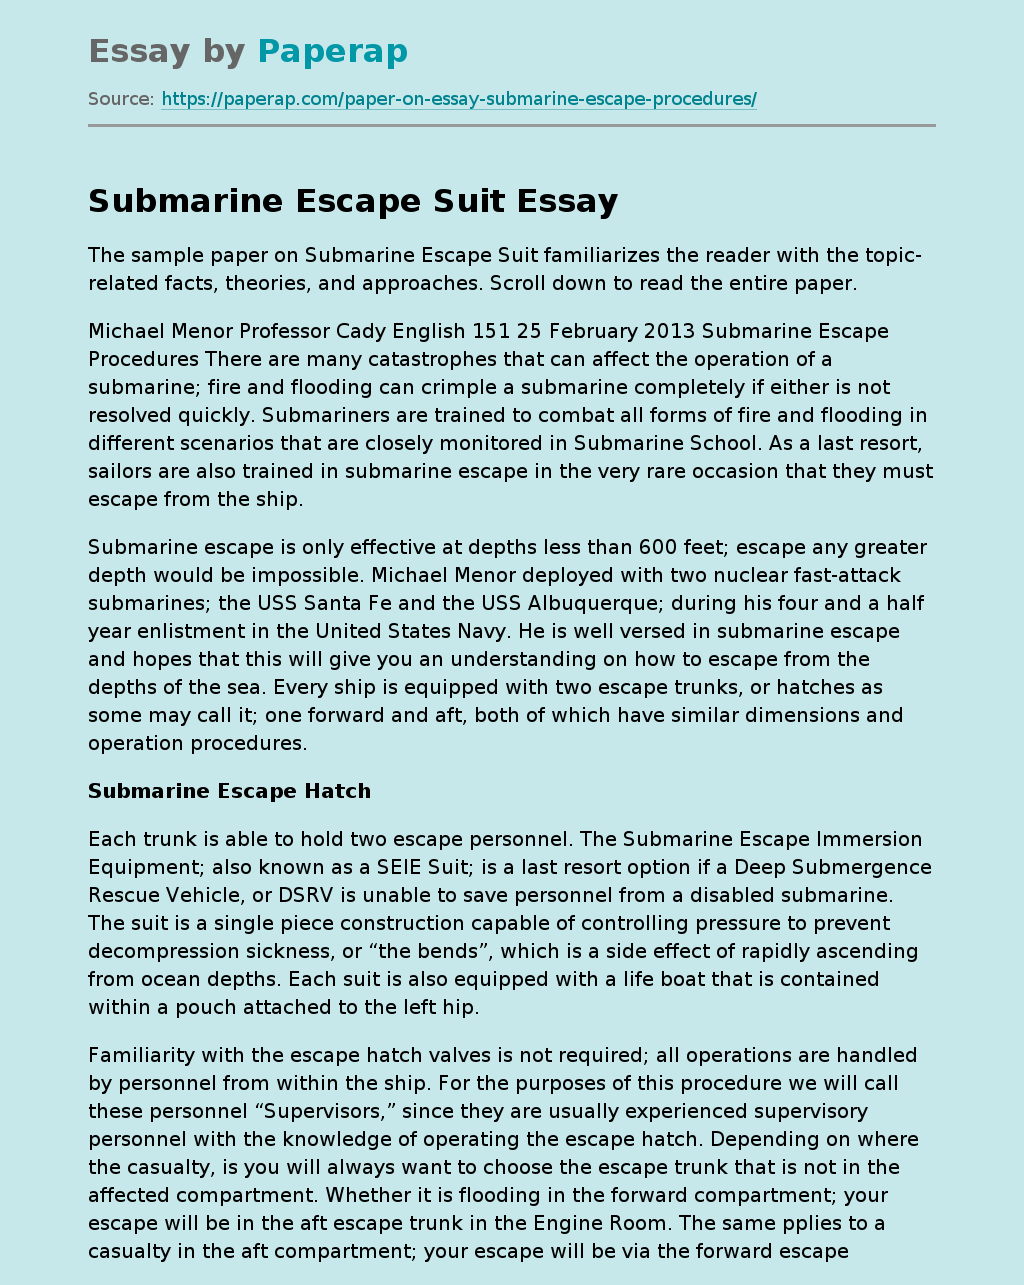 Submarine Escape Suit